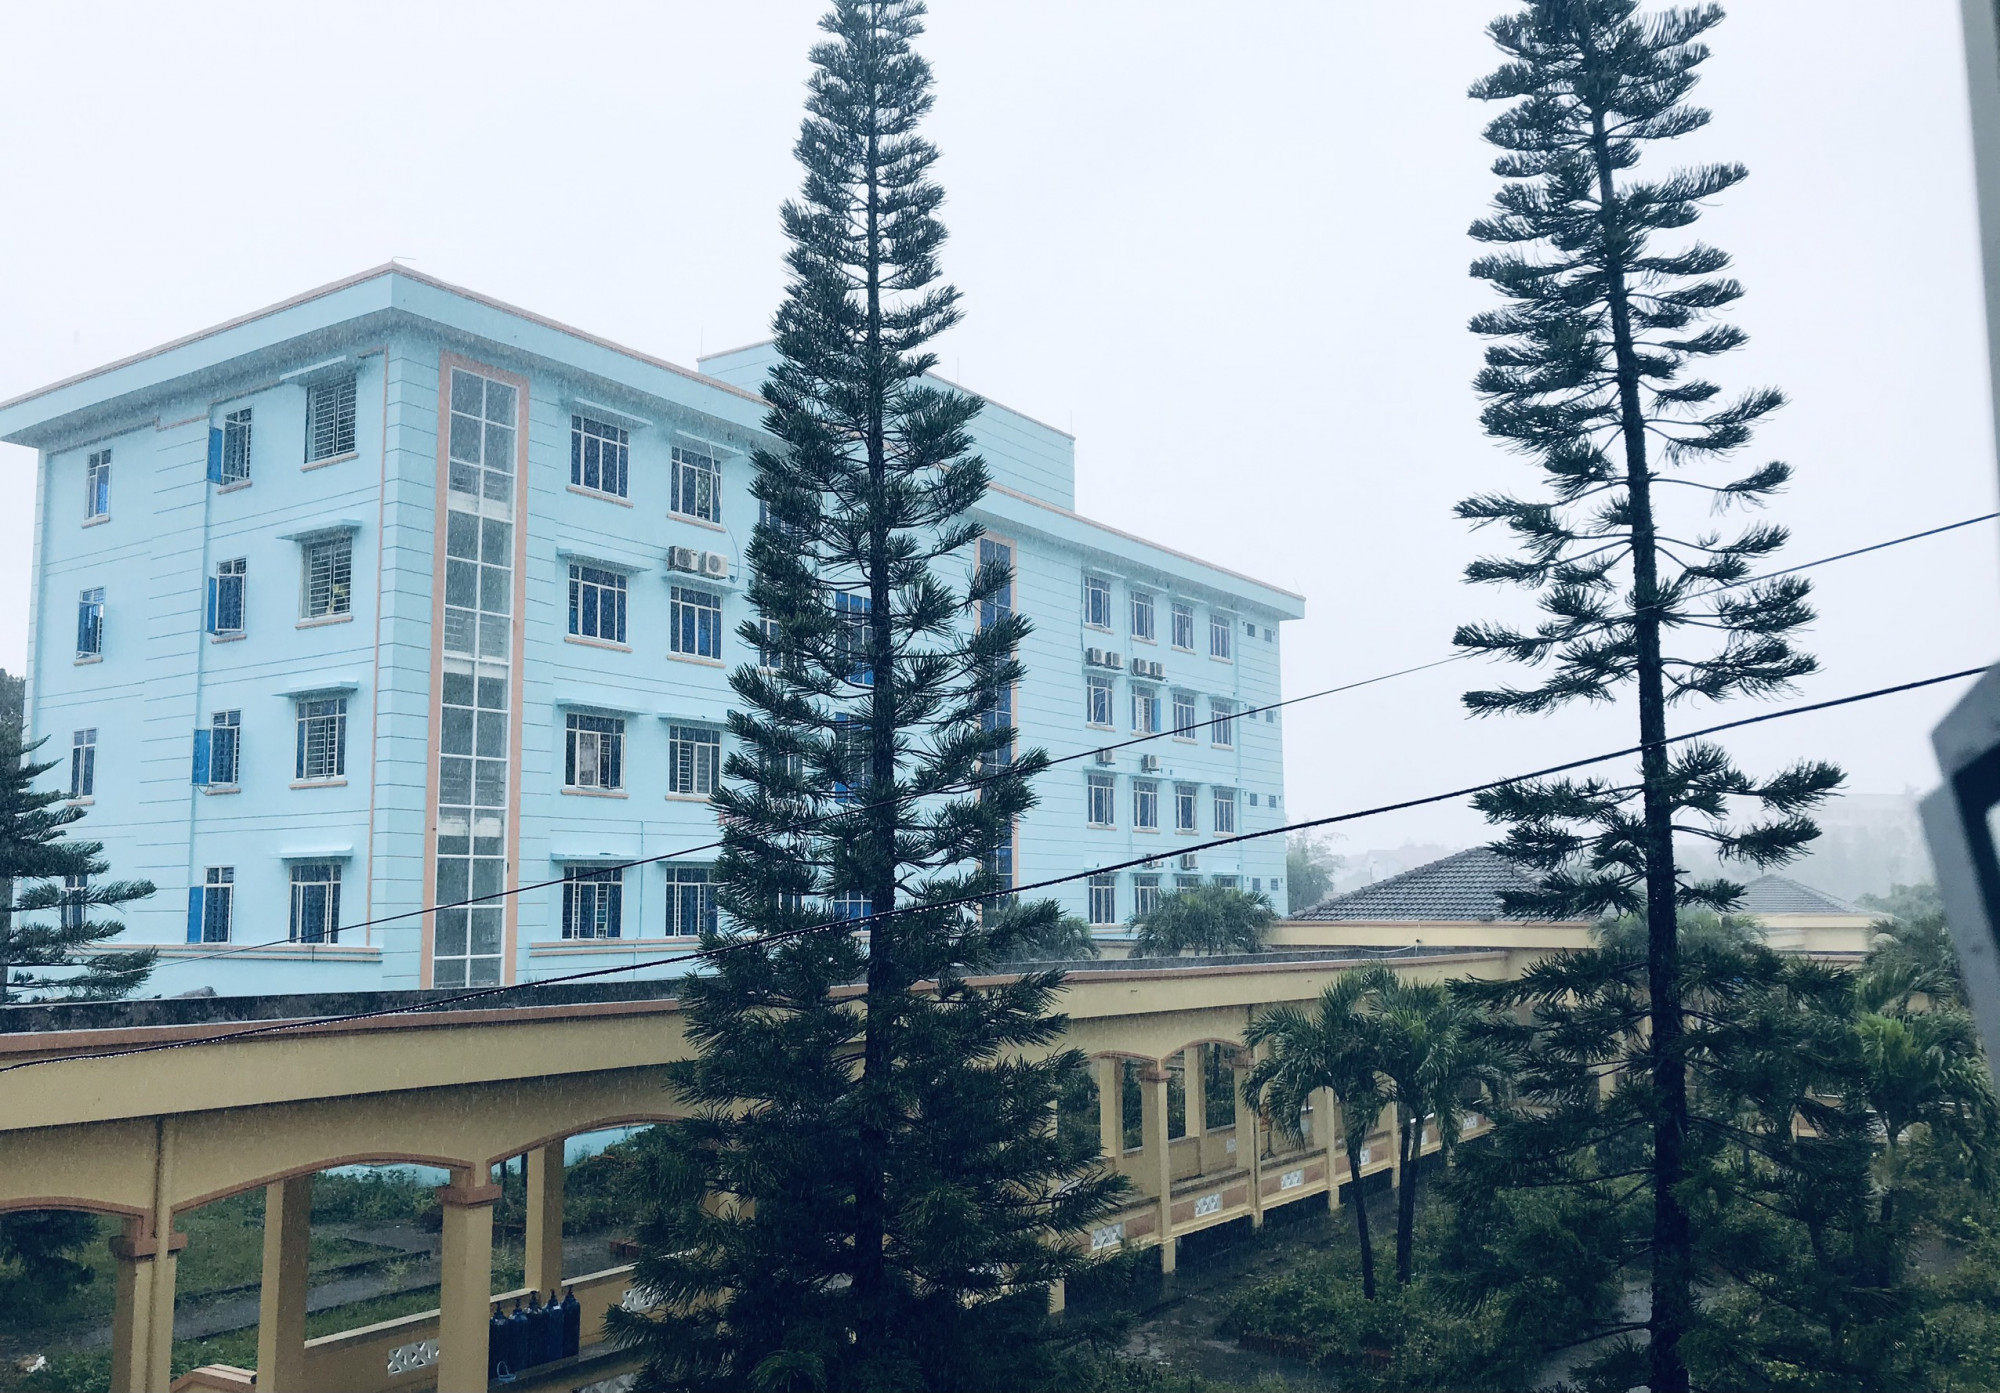 Bệnh viện điều trị bệnh nhân COVID - 19 của tỉnh Quảng Ngãi, cơ sở 1 sẳn sàng đảm bảo an toàn cho bệnh nhân mắc COVID - 19 - ảnh Thanh Vạn